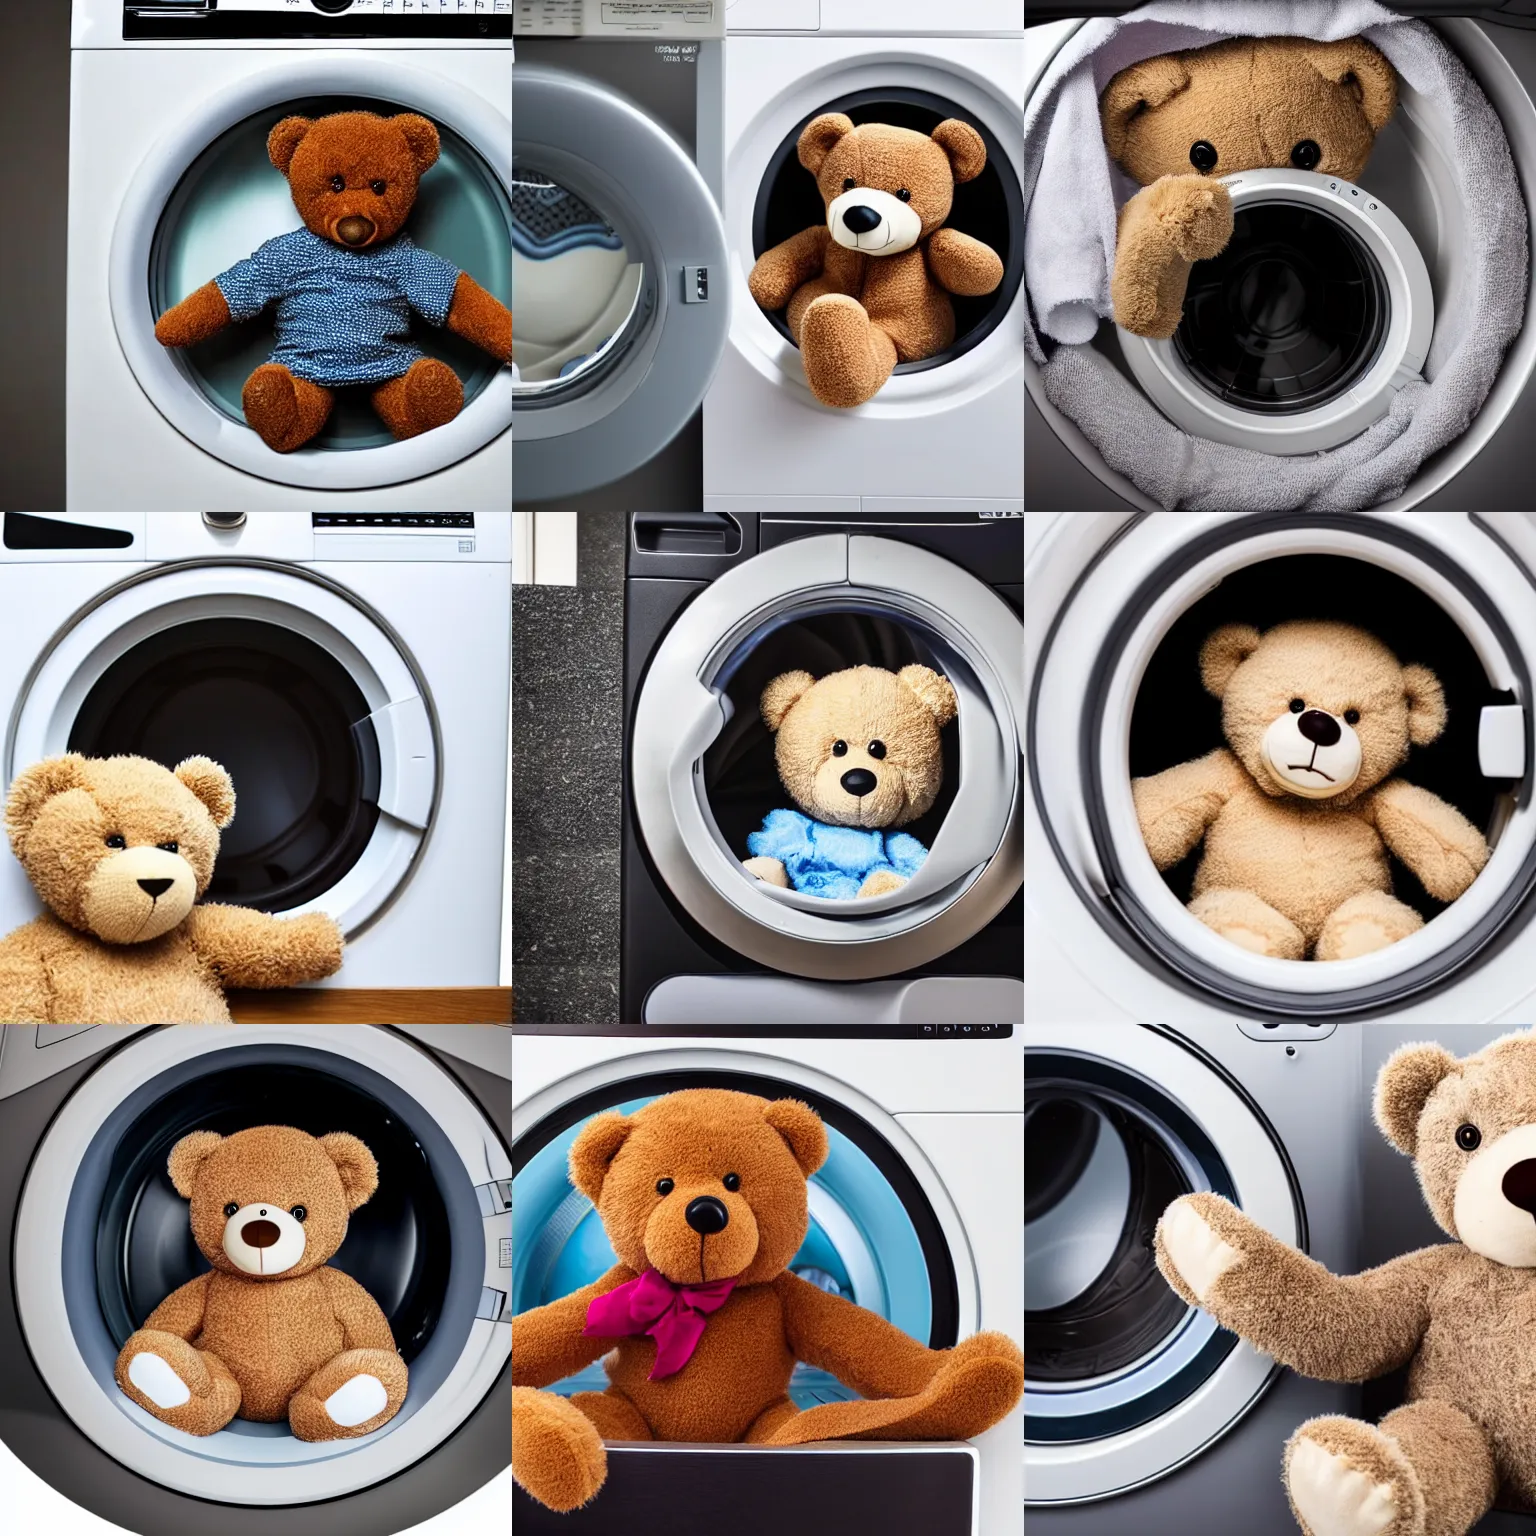 Prompt: a teddy bear inside a washing machine